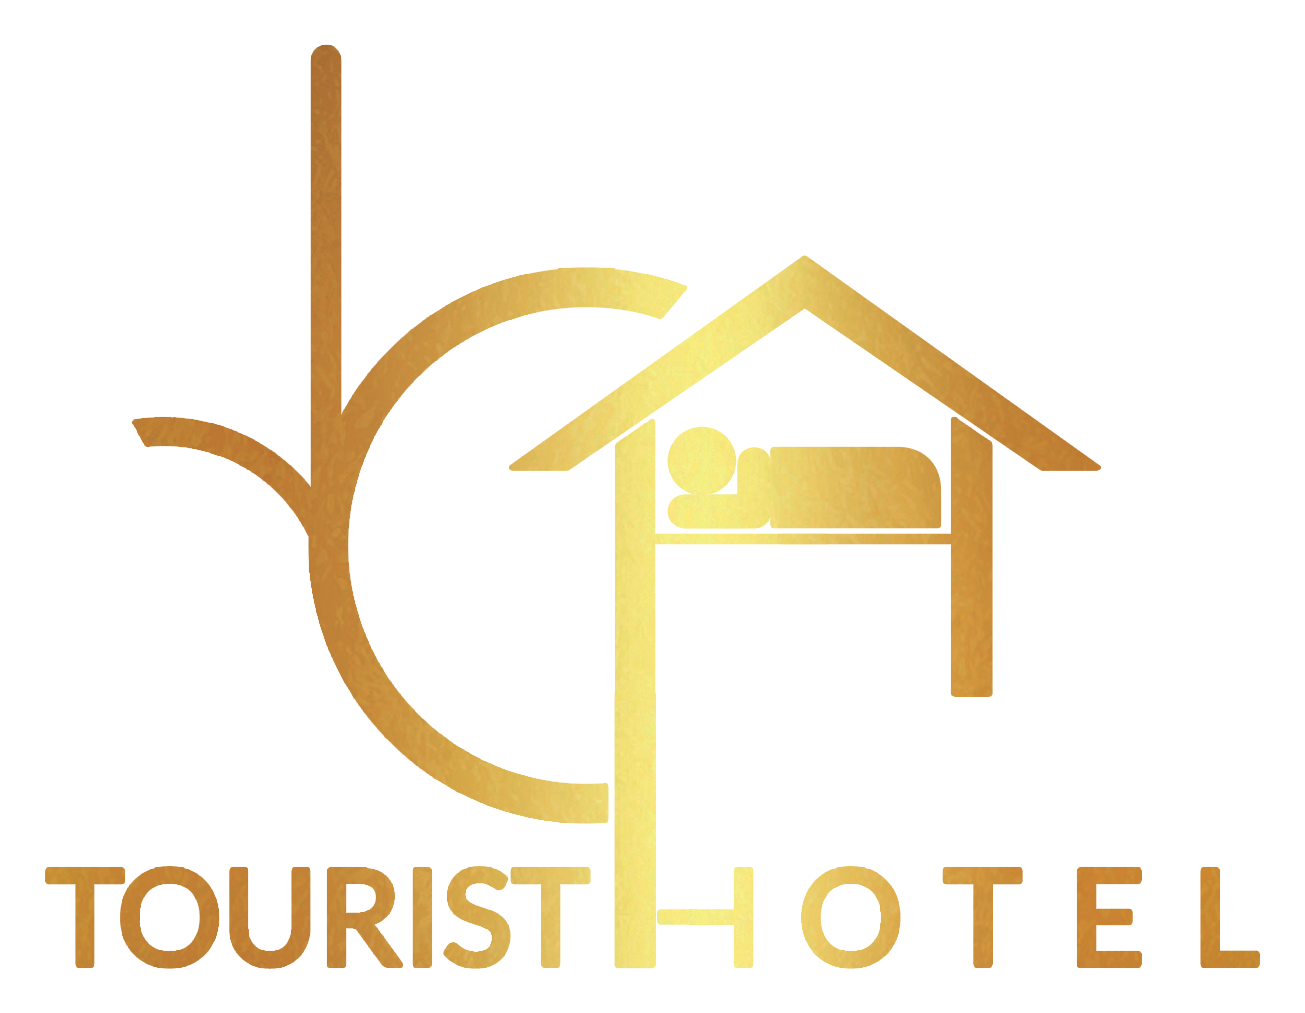 ارخص فنادق في وسط البلد - فنادق وسط البلد بالقاهرة رخيصة -اماكن للاقامة بالقاهرة 